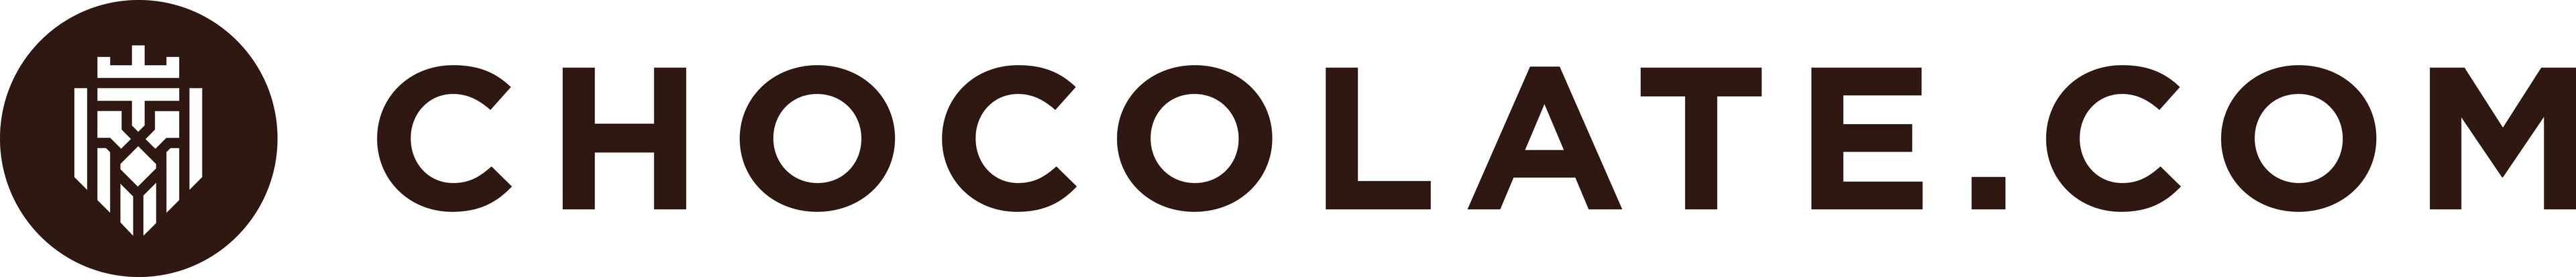 Chocolate.com logo